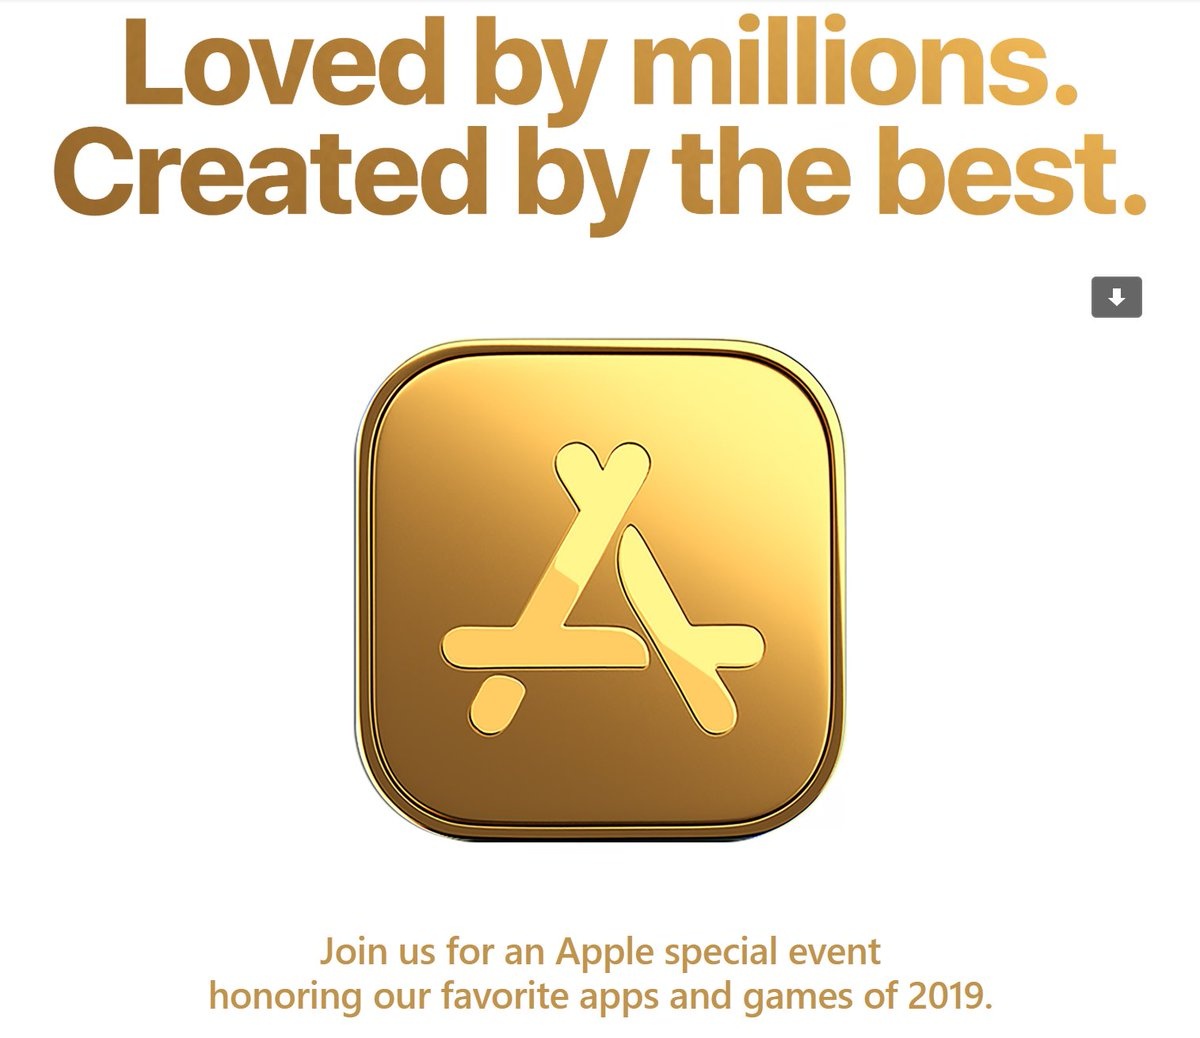 蘋果將在 12 月 2 號在紐約舉辦 special event 宣布年度最佳應用程式與遊戲